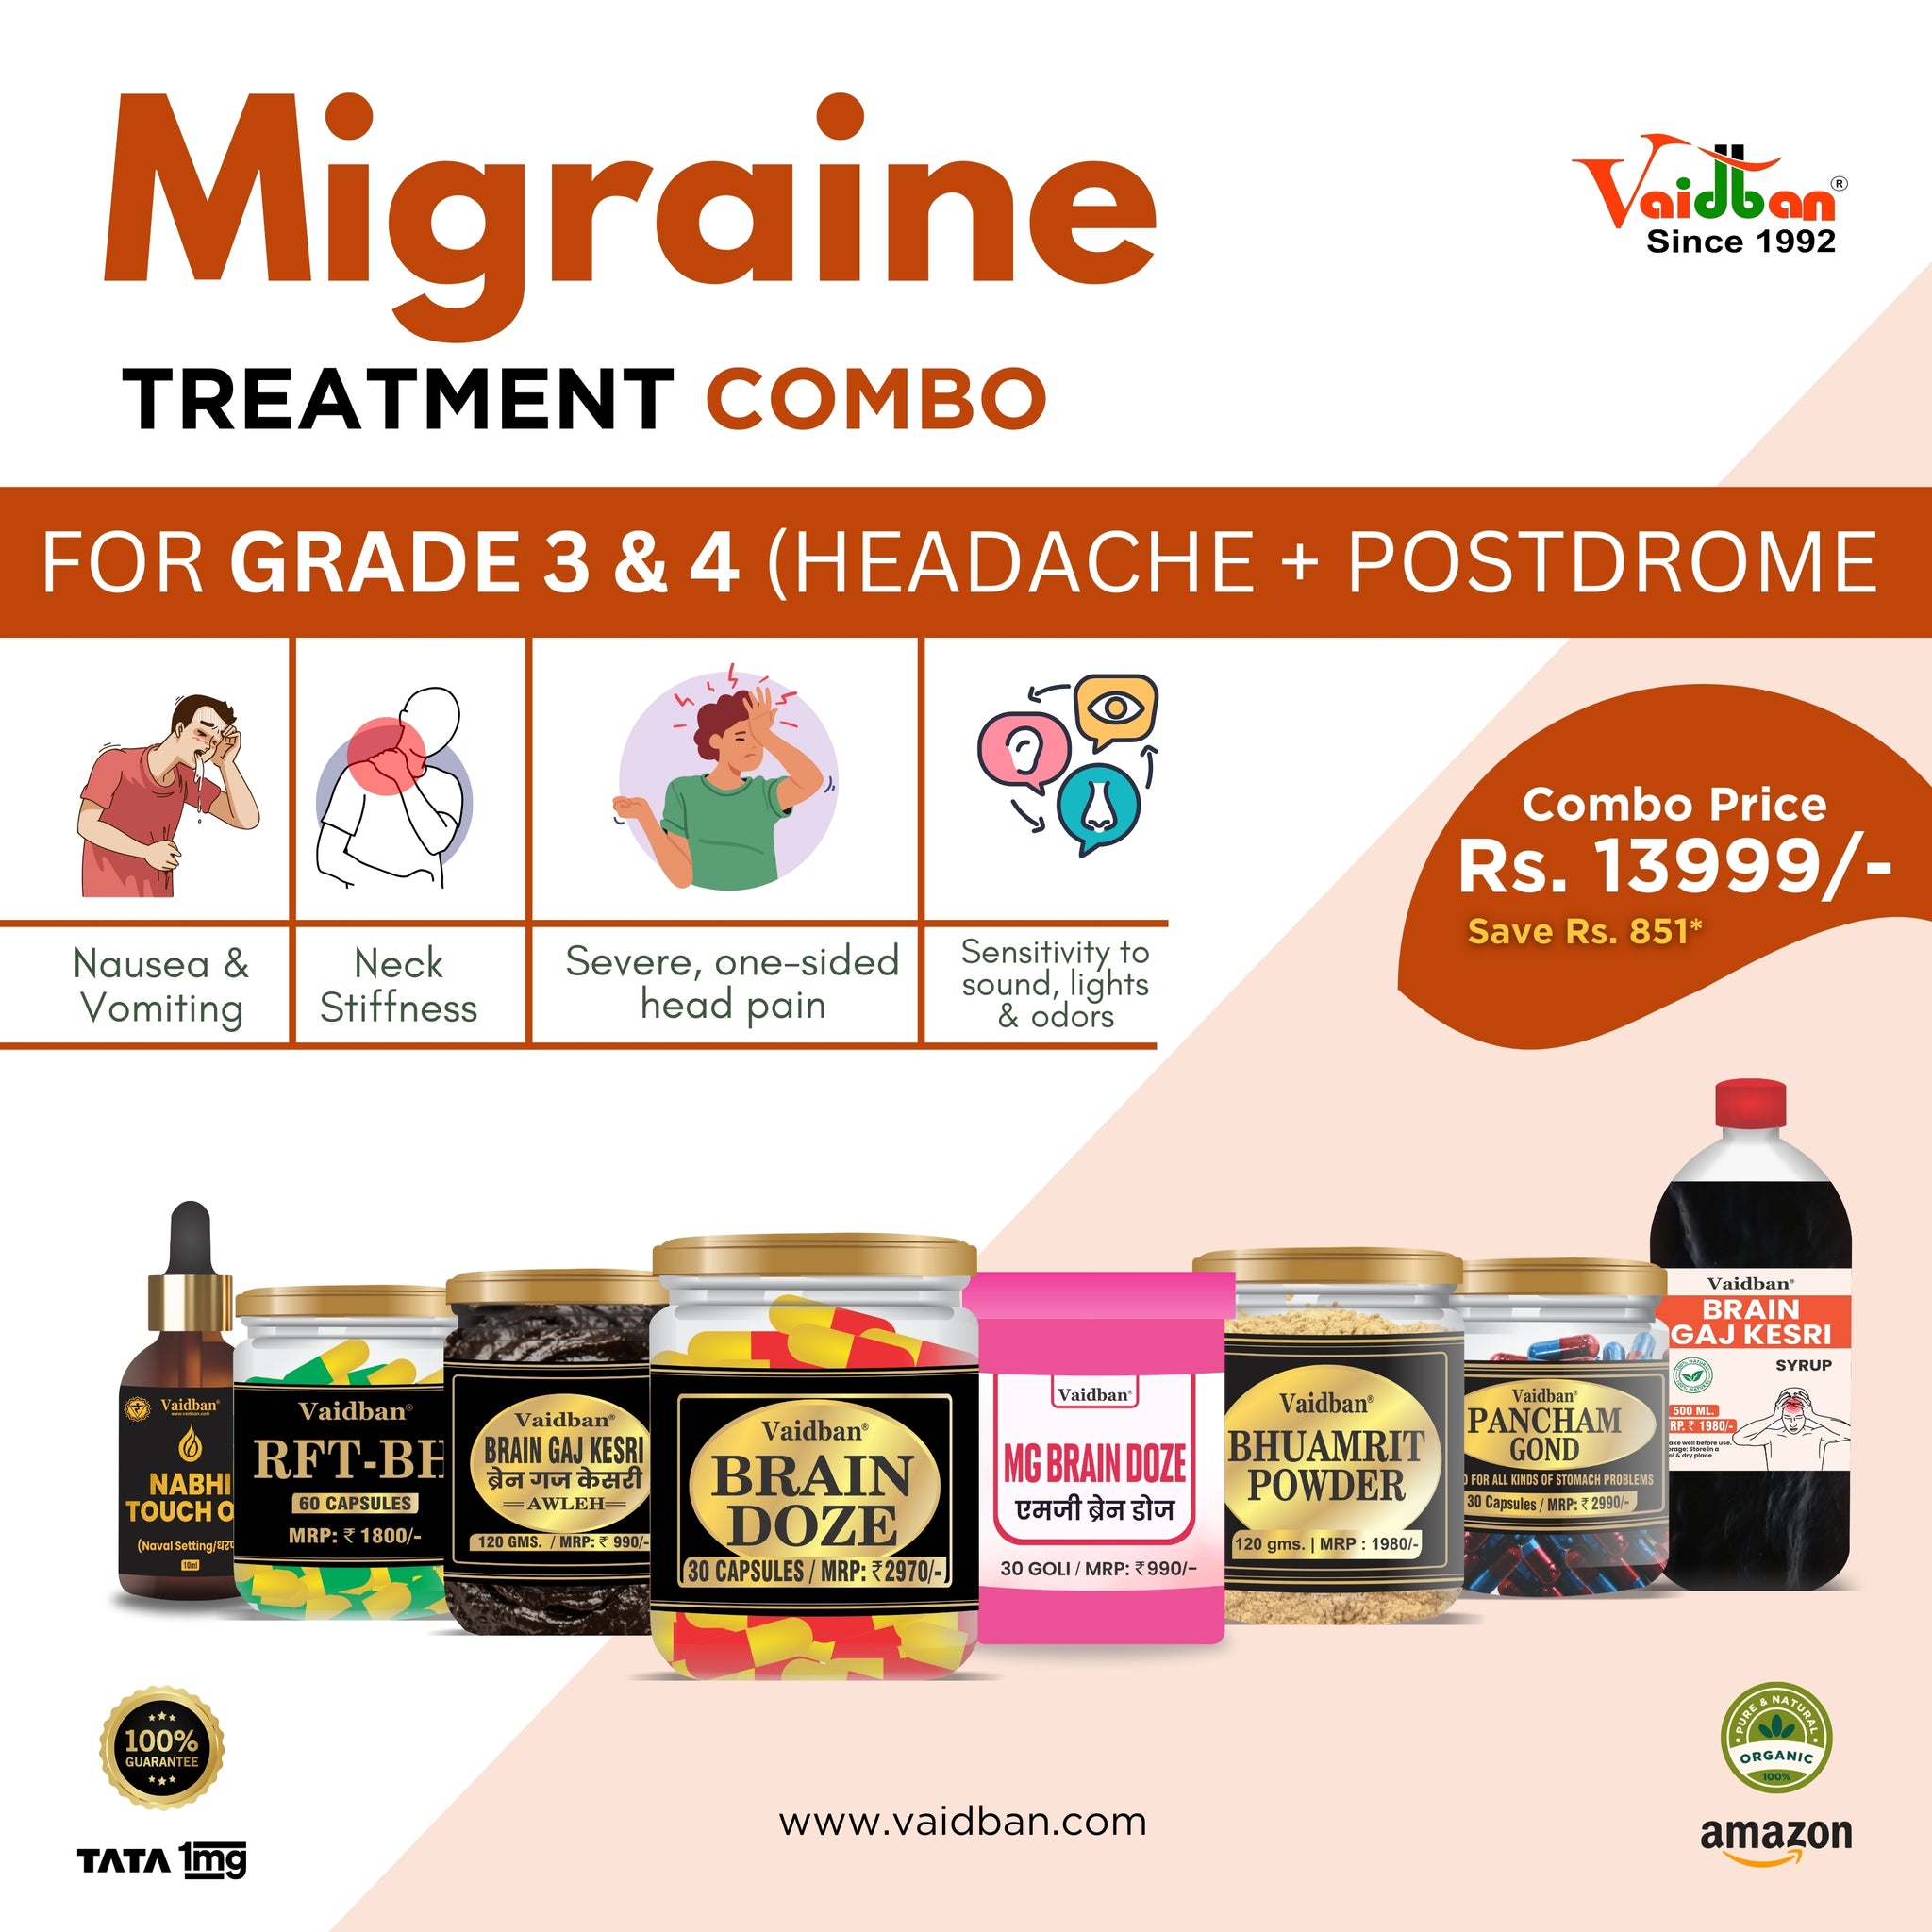 Vaidban Migraine Treatment Combo for Grade 3 & 4 (Headache + Postdrome)